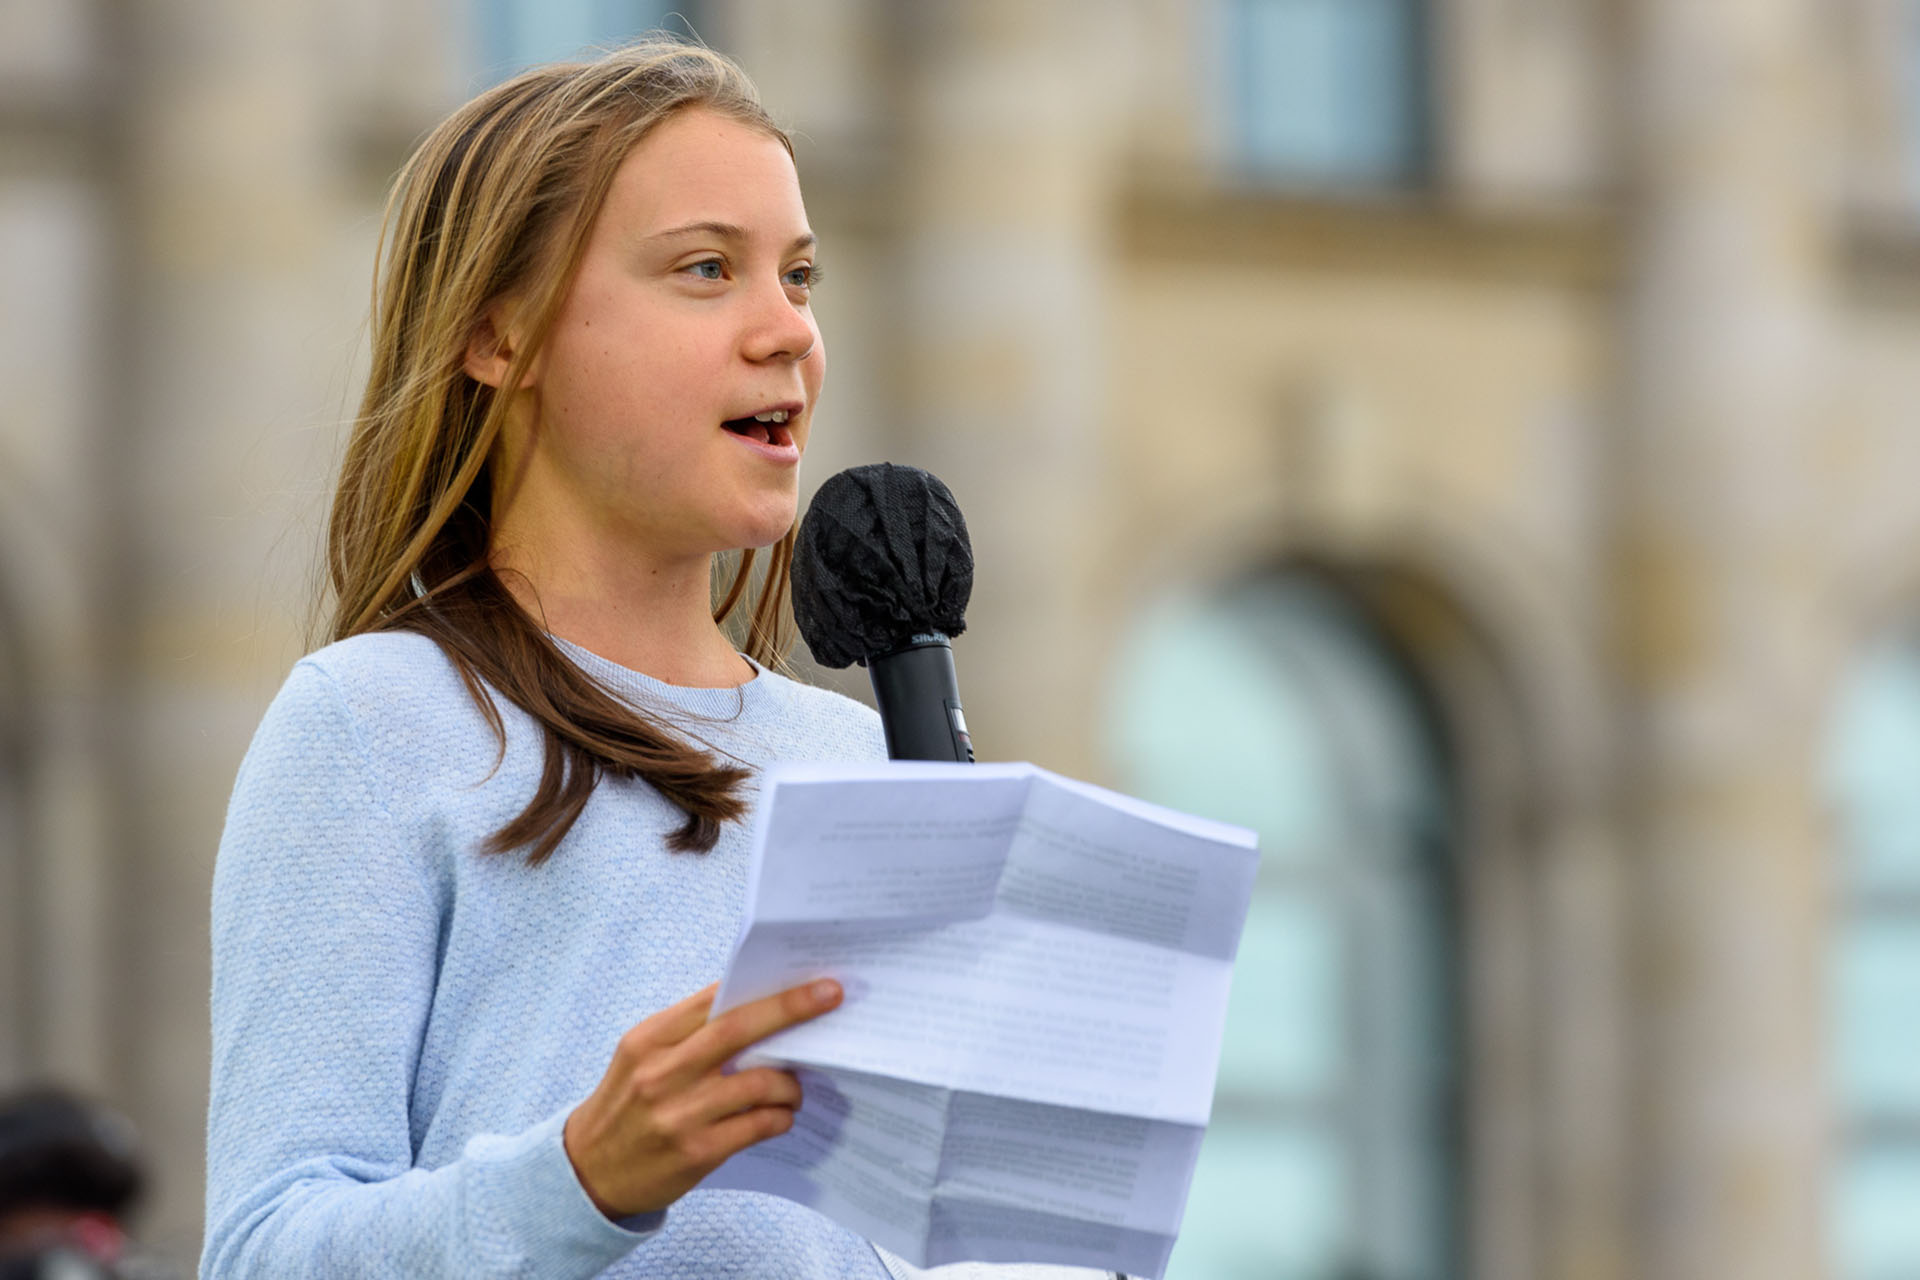 Bild: Stefan Müller, Greta Thunberg spricht beim Klimastreik vor dem Reichstag, CC BY 2.0, via Wikimedia Commons (Bildgröße geändert)